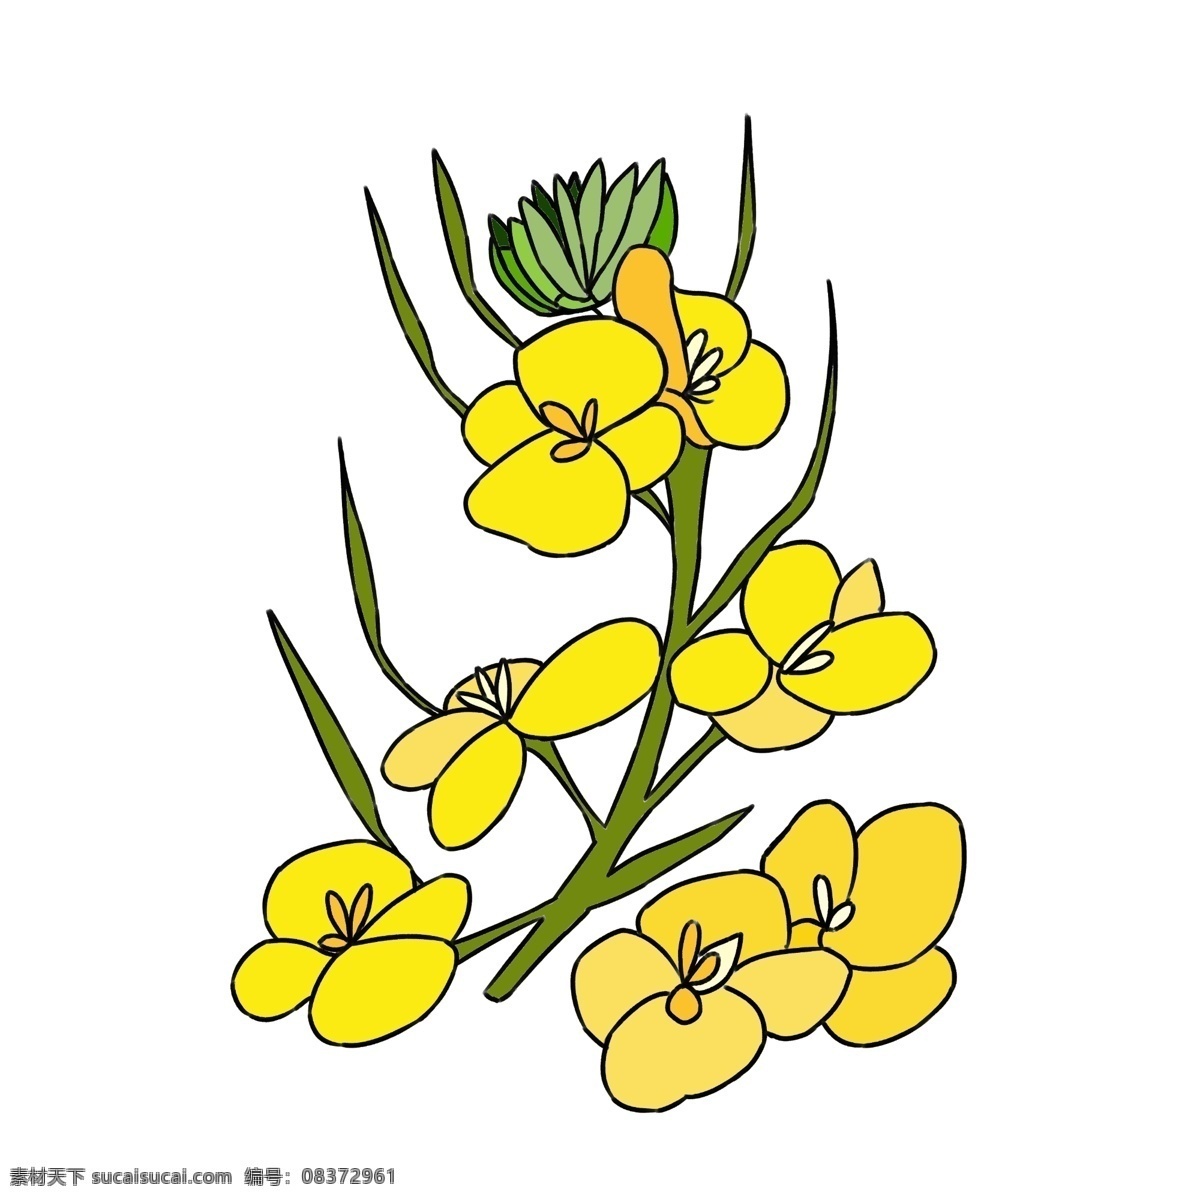 绽放 油菜花 花朵 插画 植物 春天油菜花 唯美鲜花插画 黄色花朵插画